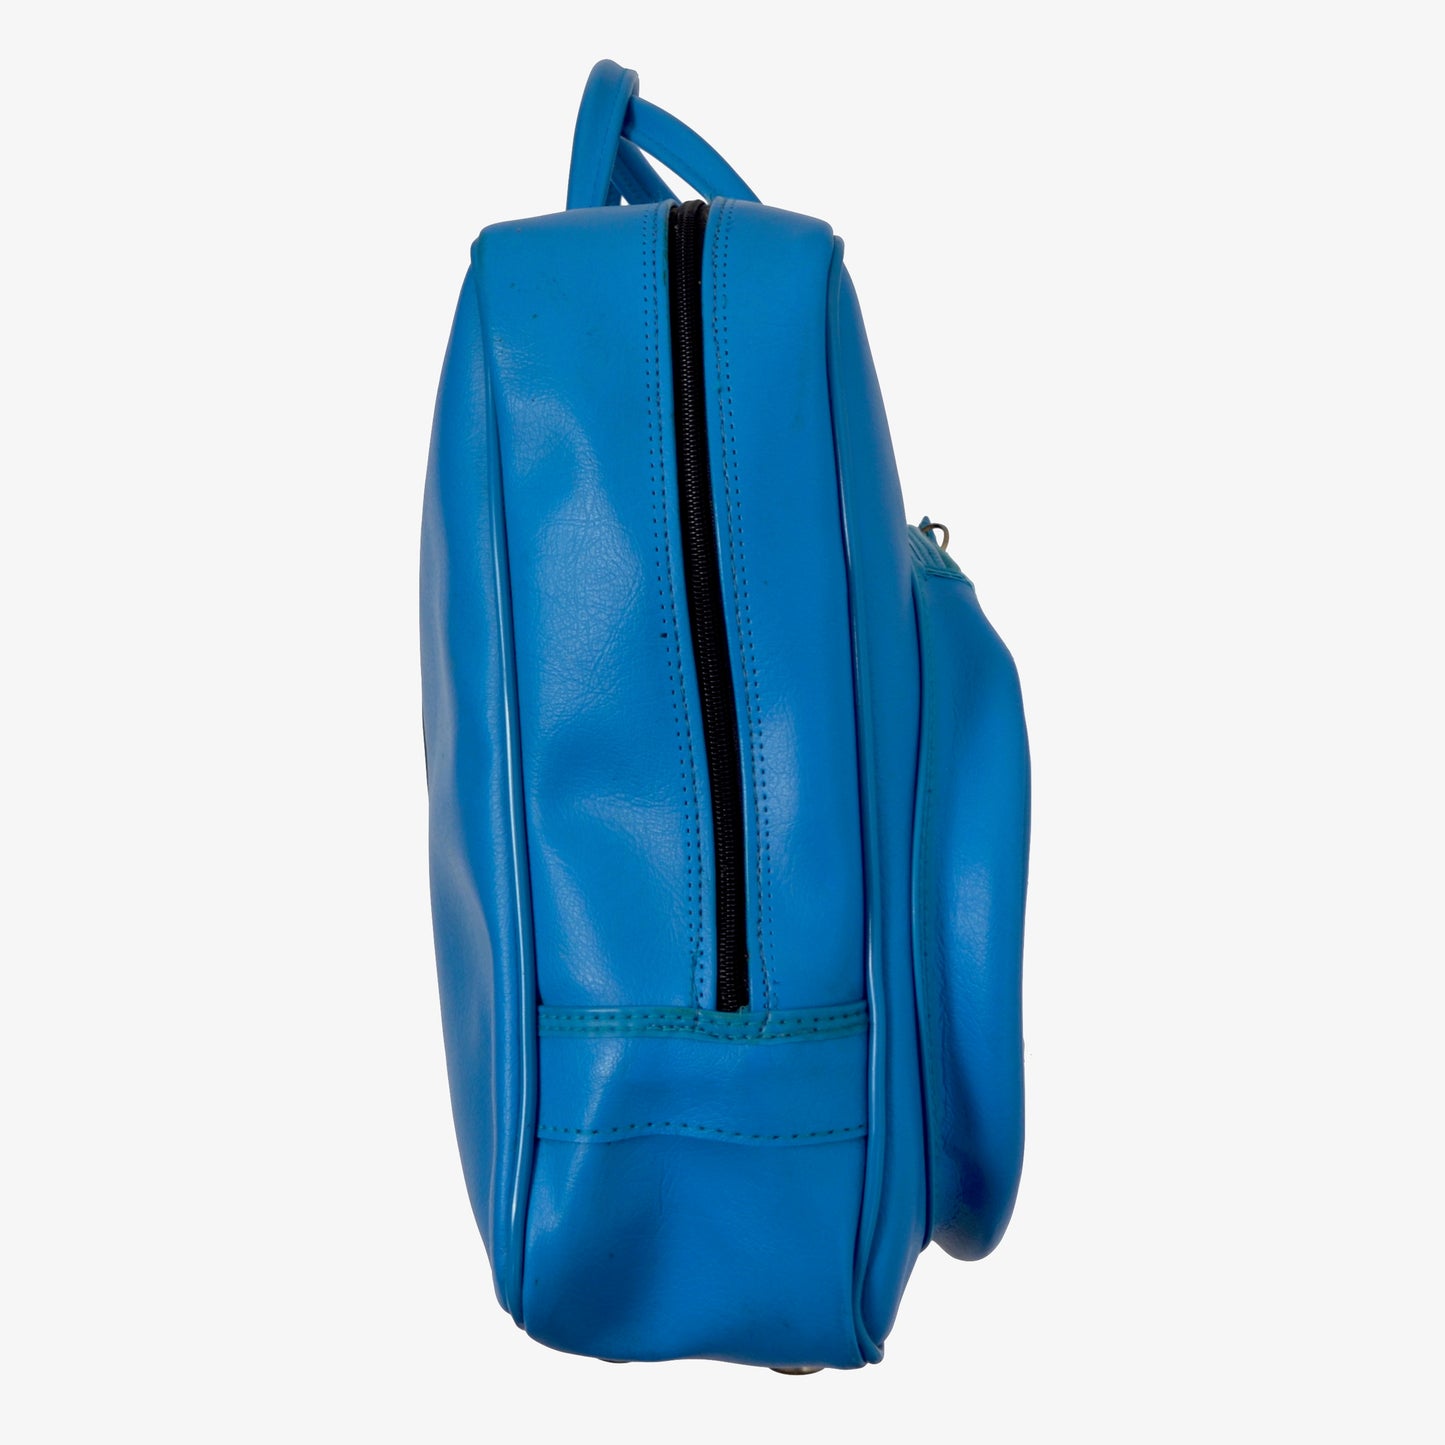 Vintage Adidas Tennistasche - blau